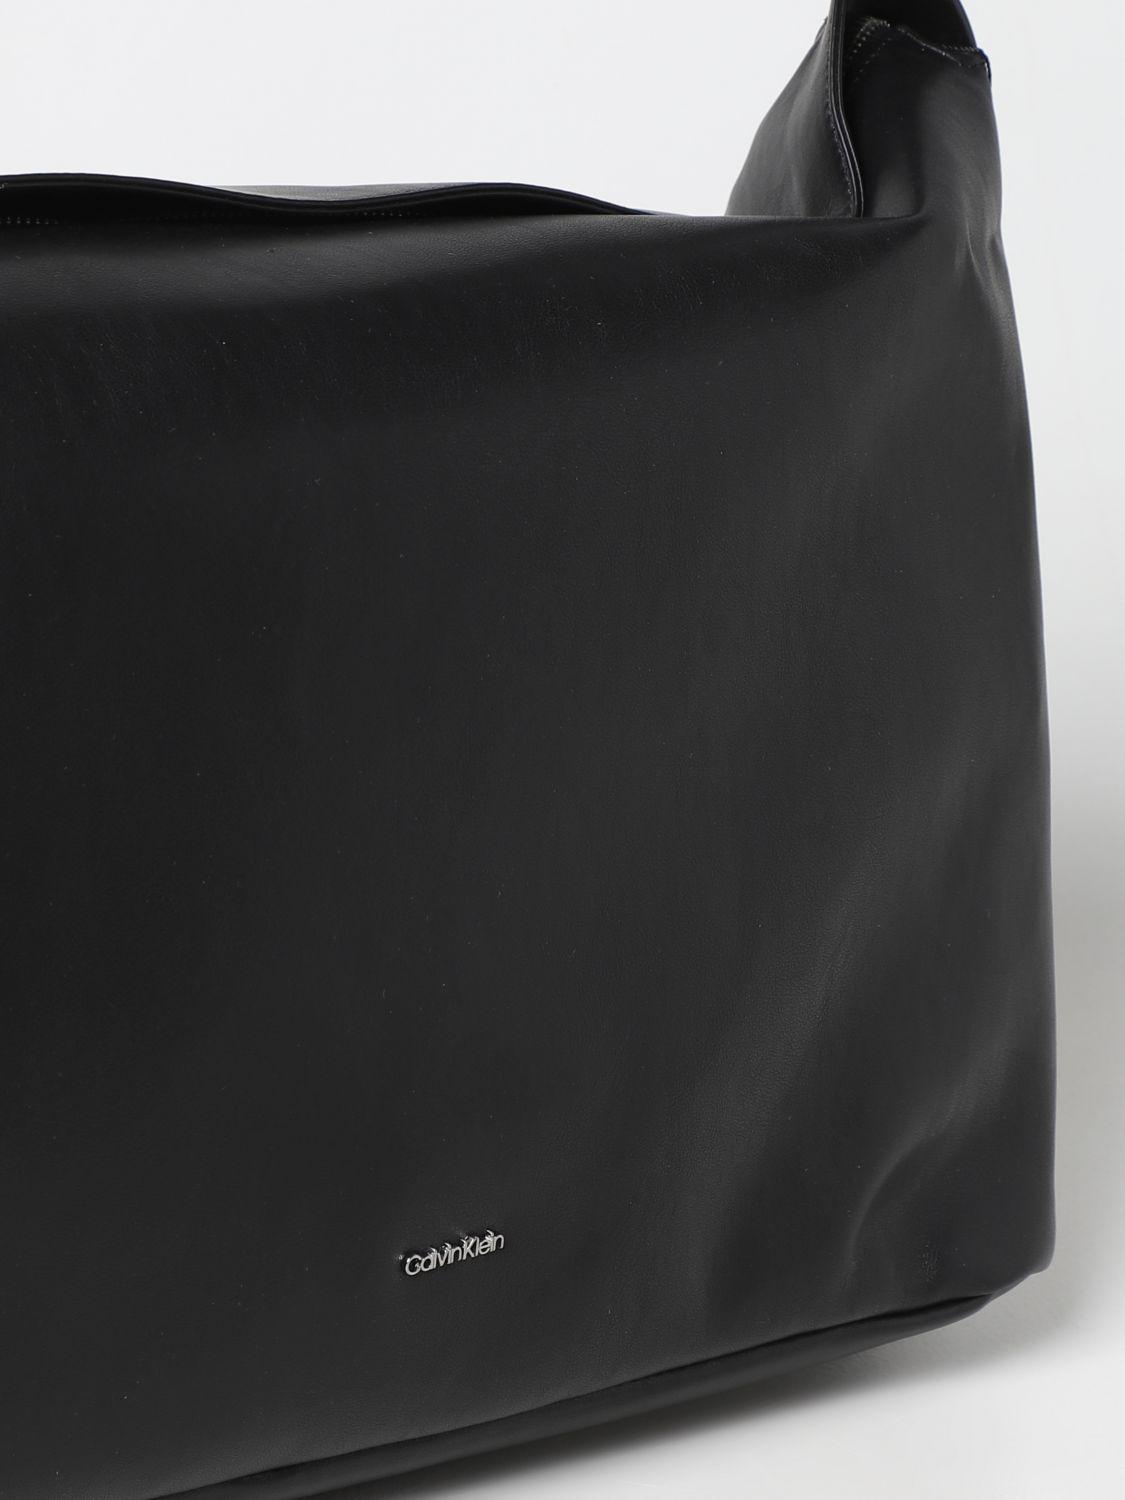 Calvin Klein Lucy Shoulder Bag - Macy's